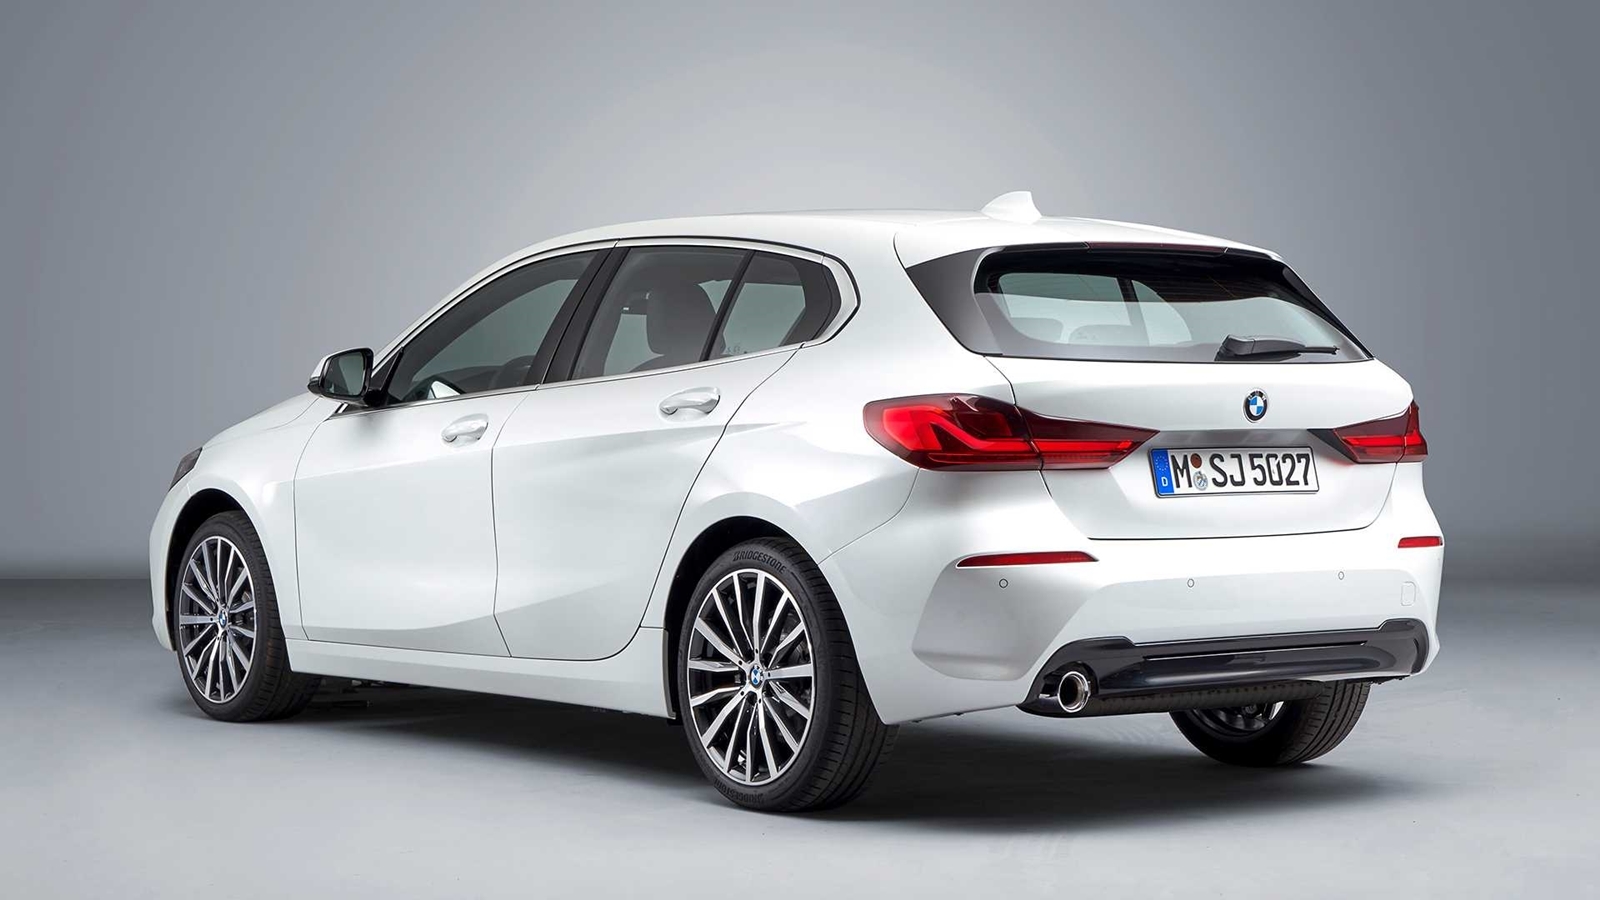 Precios del nuevo BMW Serie 1 2020